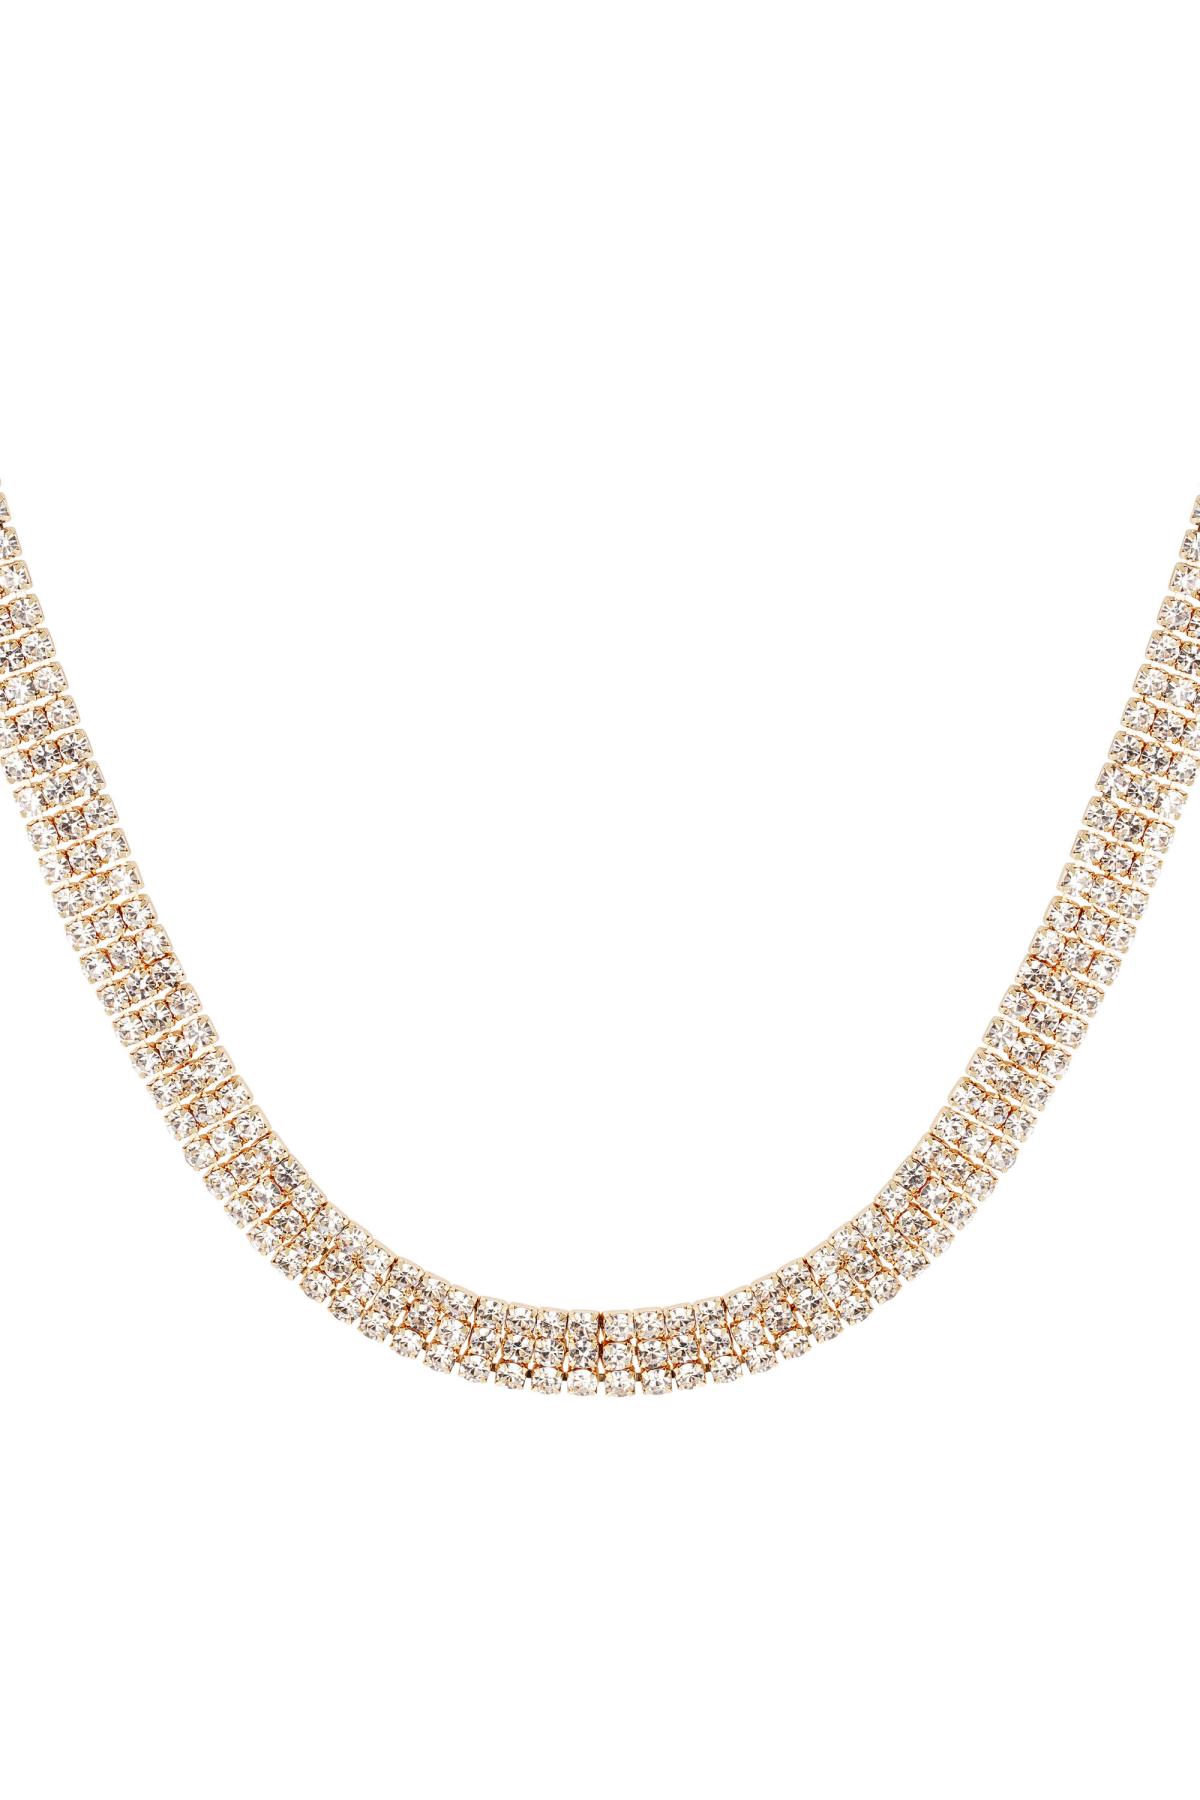 Halskette mit festlichen Strasssteinen - Holiday essentials Gold Kupfer